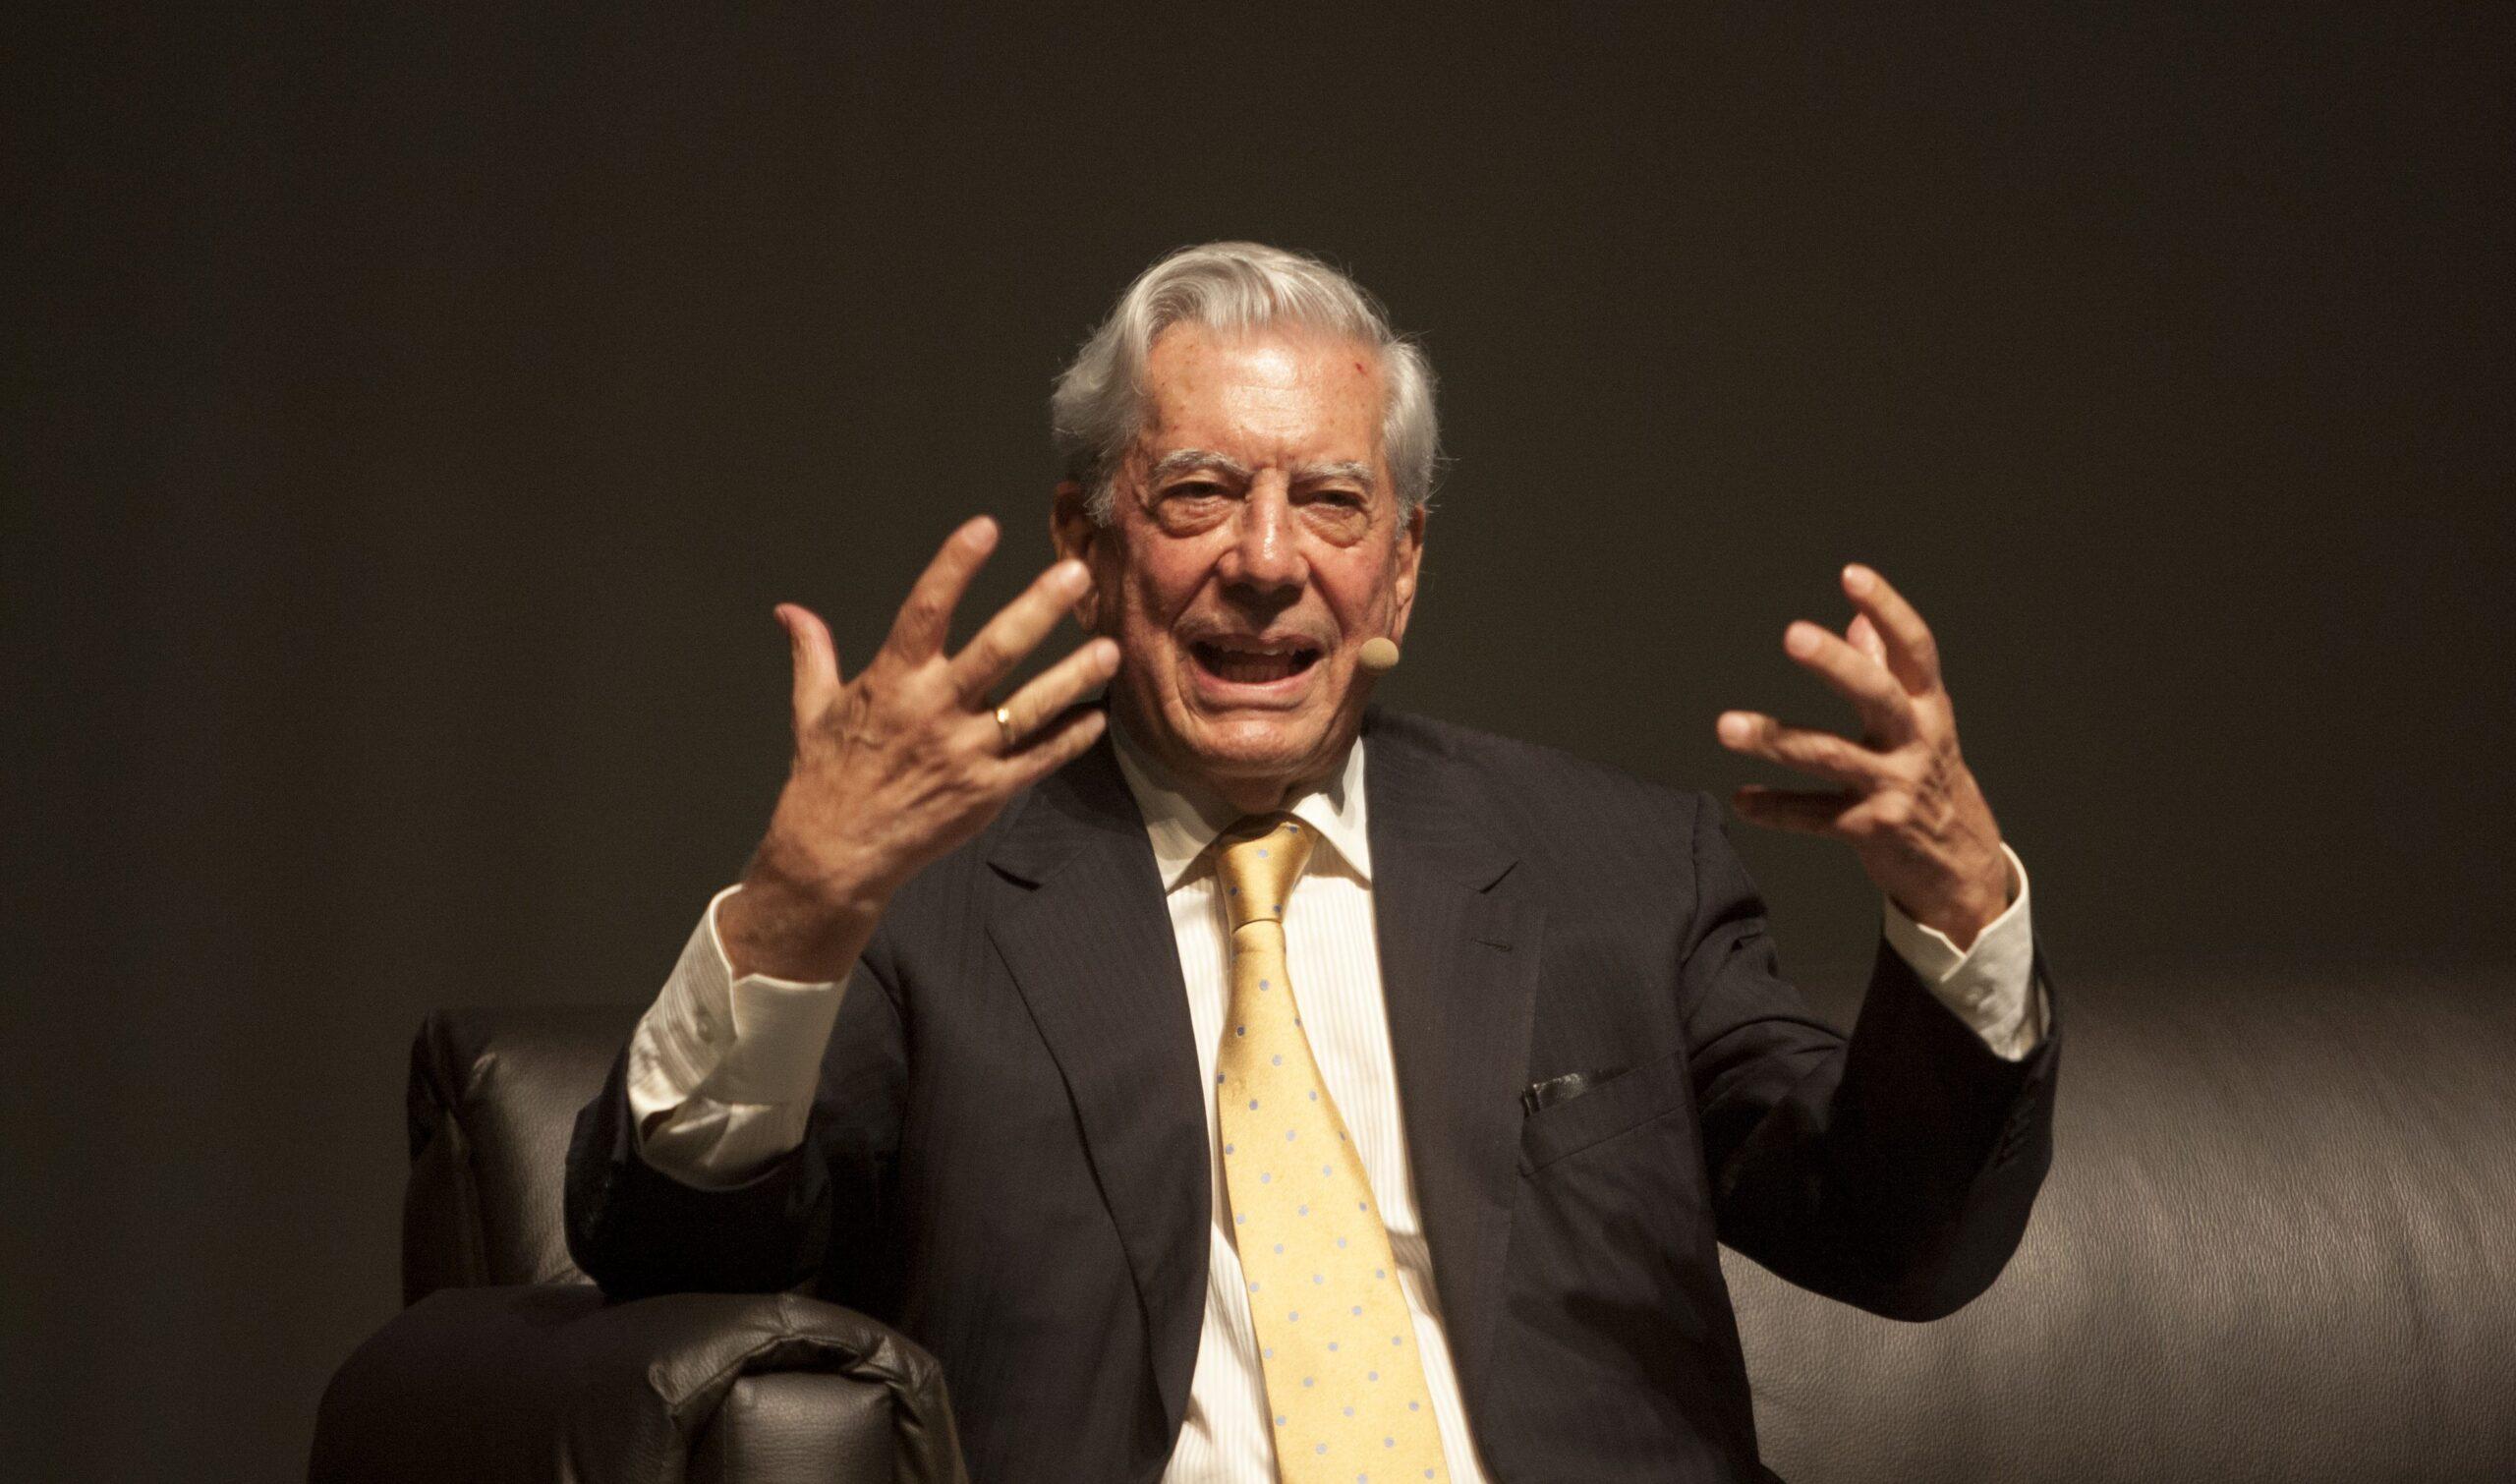 La candidatura de Donald Trump es un suicidio para los republicanos, dice Mario Vargas Llosa